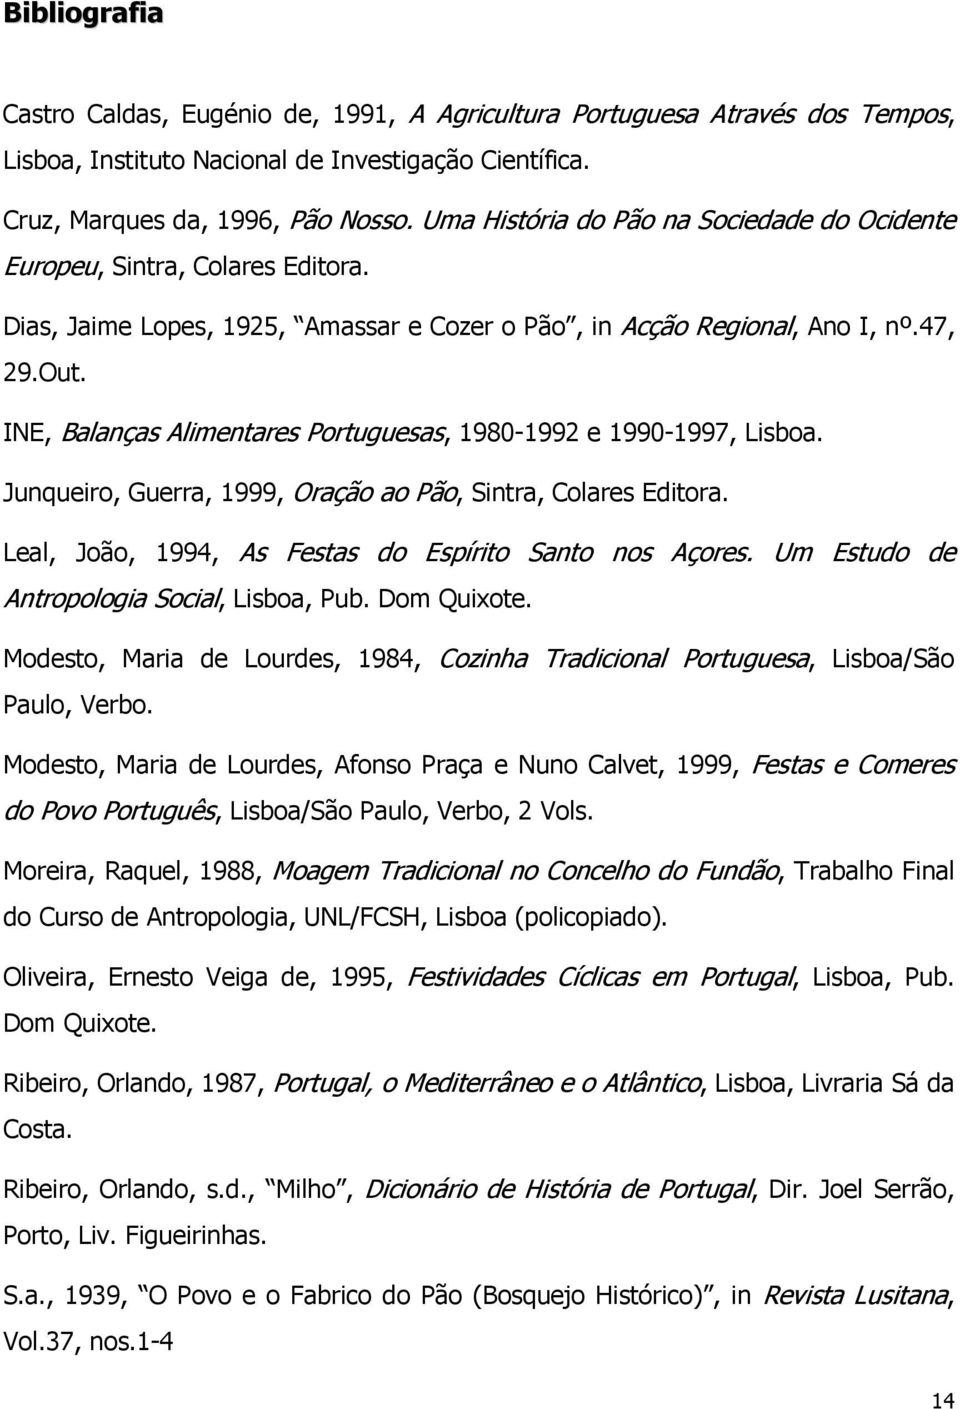 INE, Balanças Alimentares Portuguesas, 1980-1992 e 1990-1997, Lisboa. Junqueiro, Guerra, 1999, Oração ao Pão, Sintra, Colares Editora. Leal, João, 1994, As Festas do Espírito Santo nos Açores.